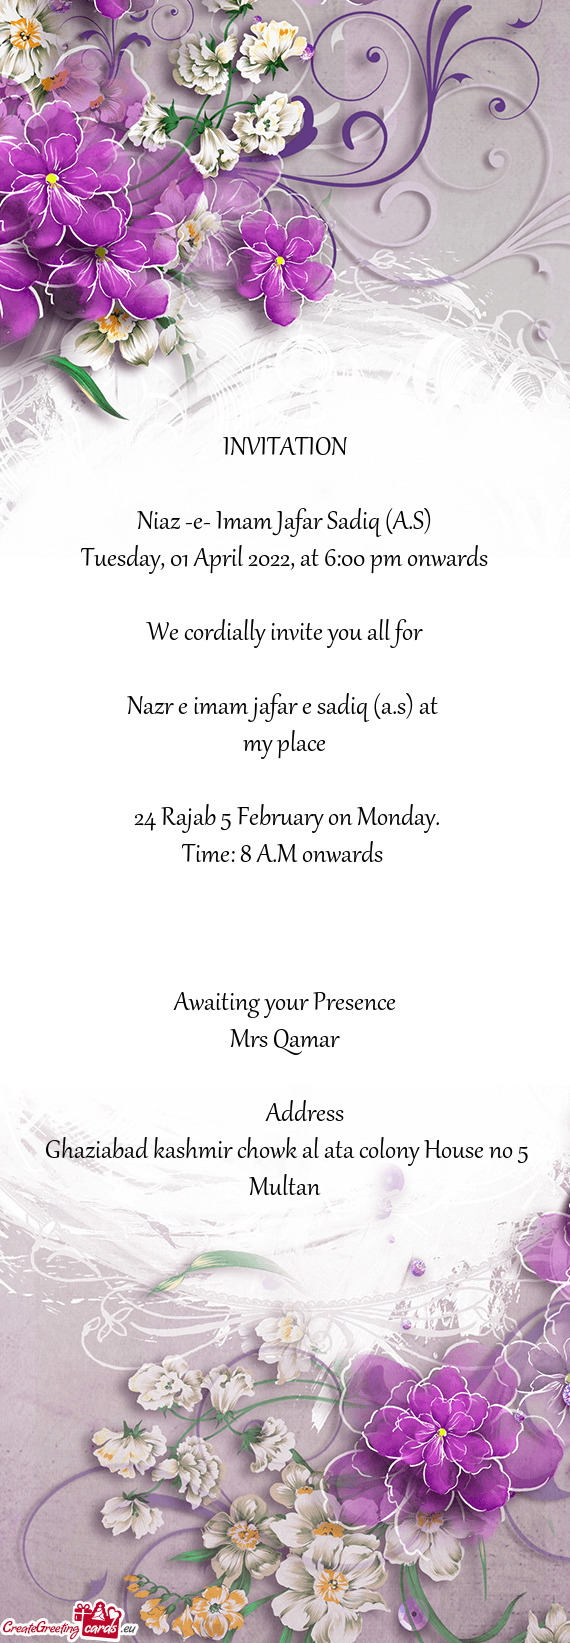 24 Rajab 5 February on Monday